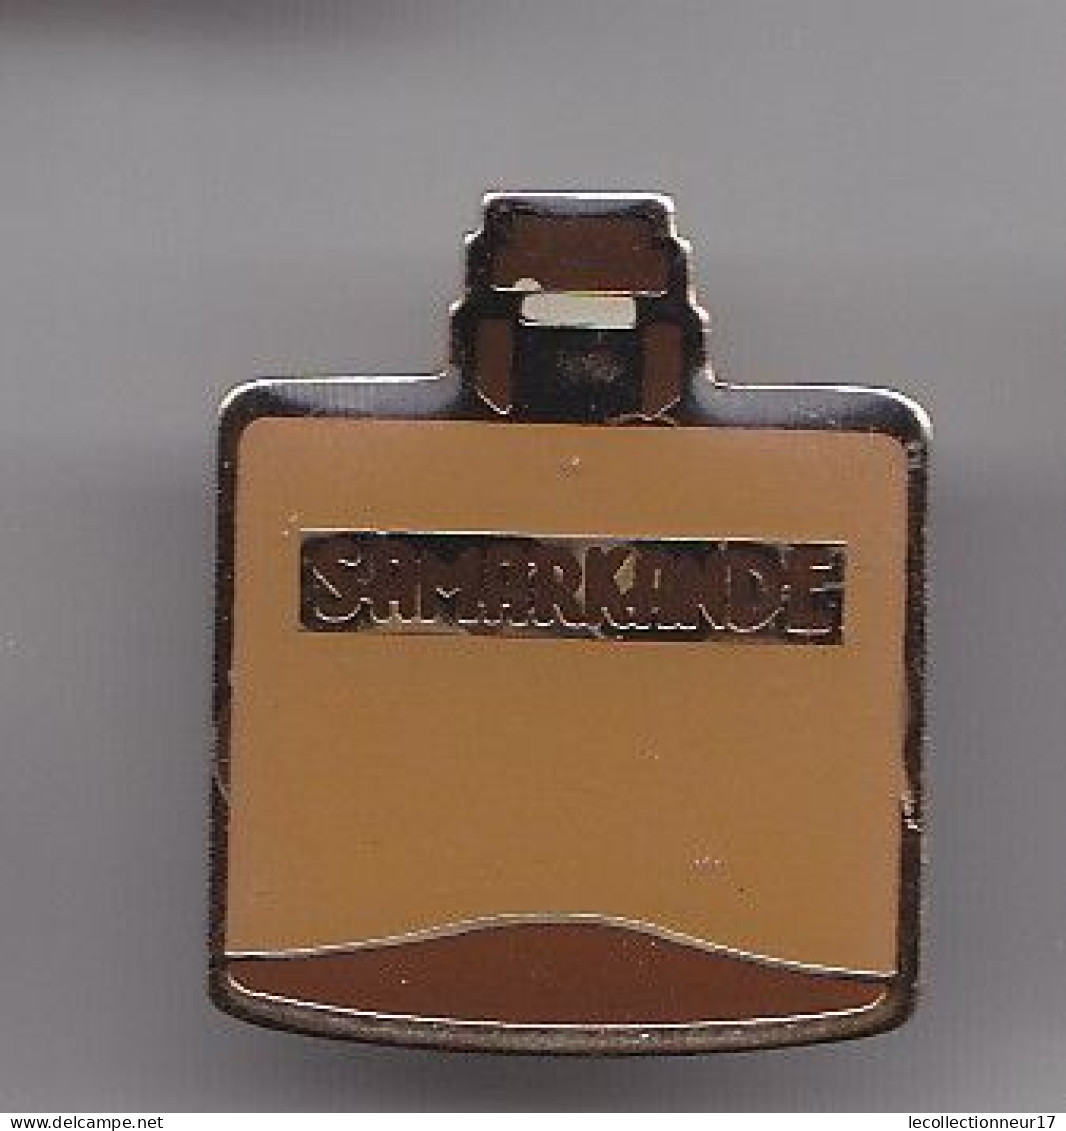 Pin's Flacon De Parfum Samarkande Réf 5124 - Perfume